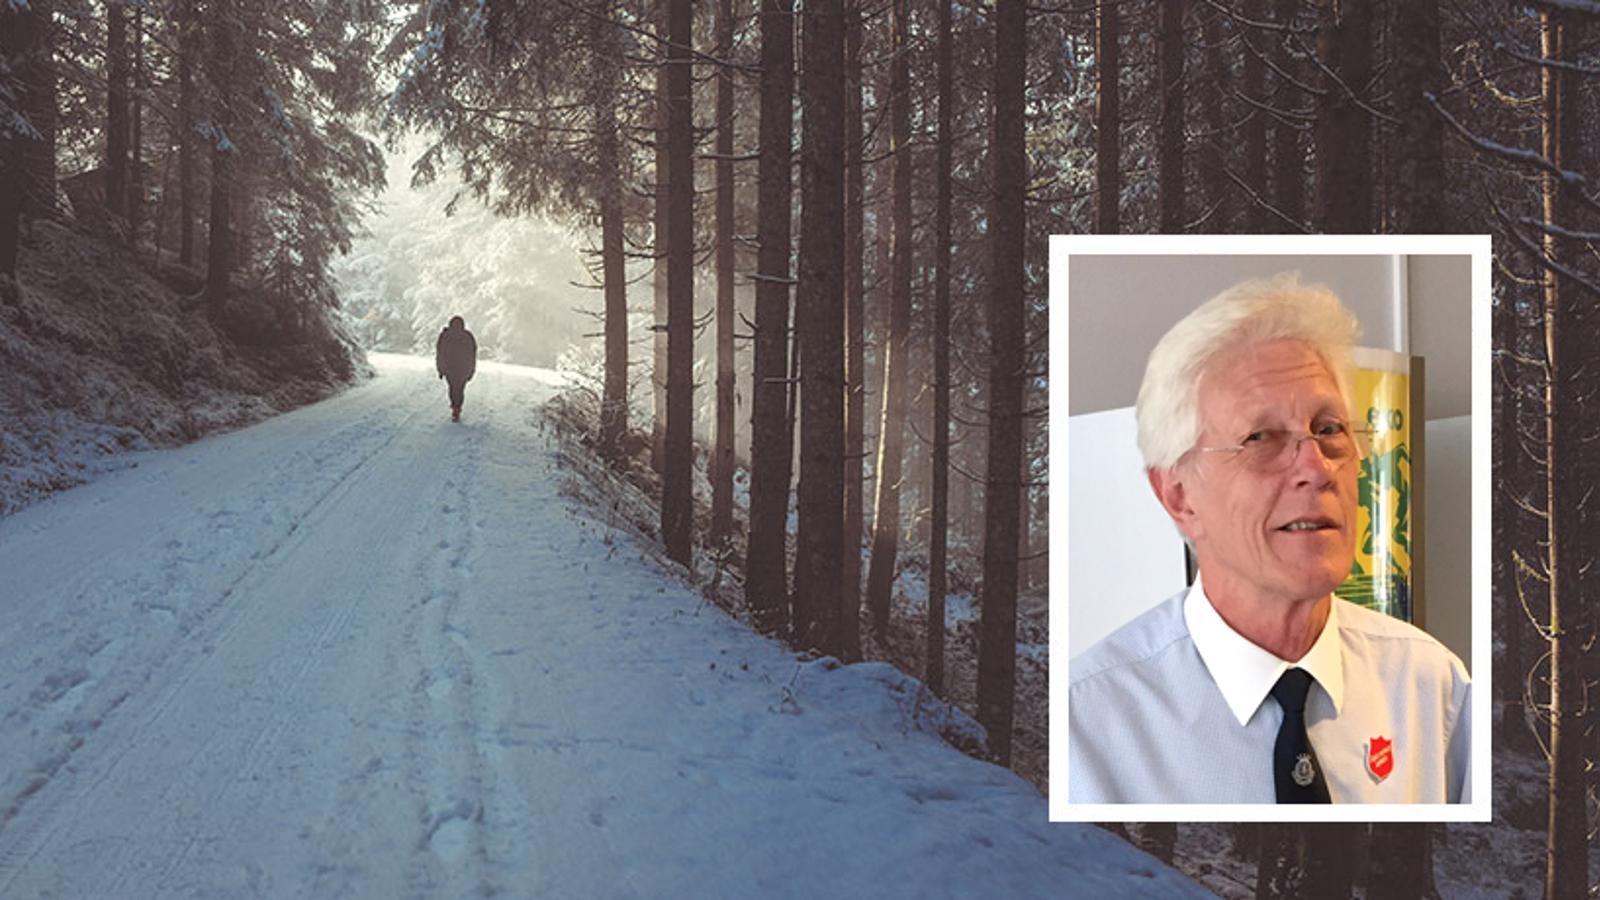 Till vänster: Ryggtavlan på en person som är ute och går på en snötäckt stig i skogen. Till höger: Lennart Wiman.